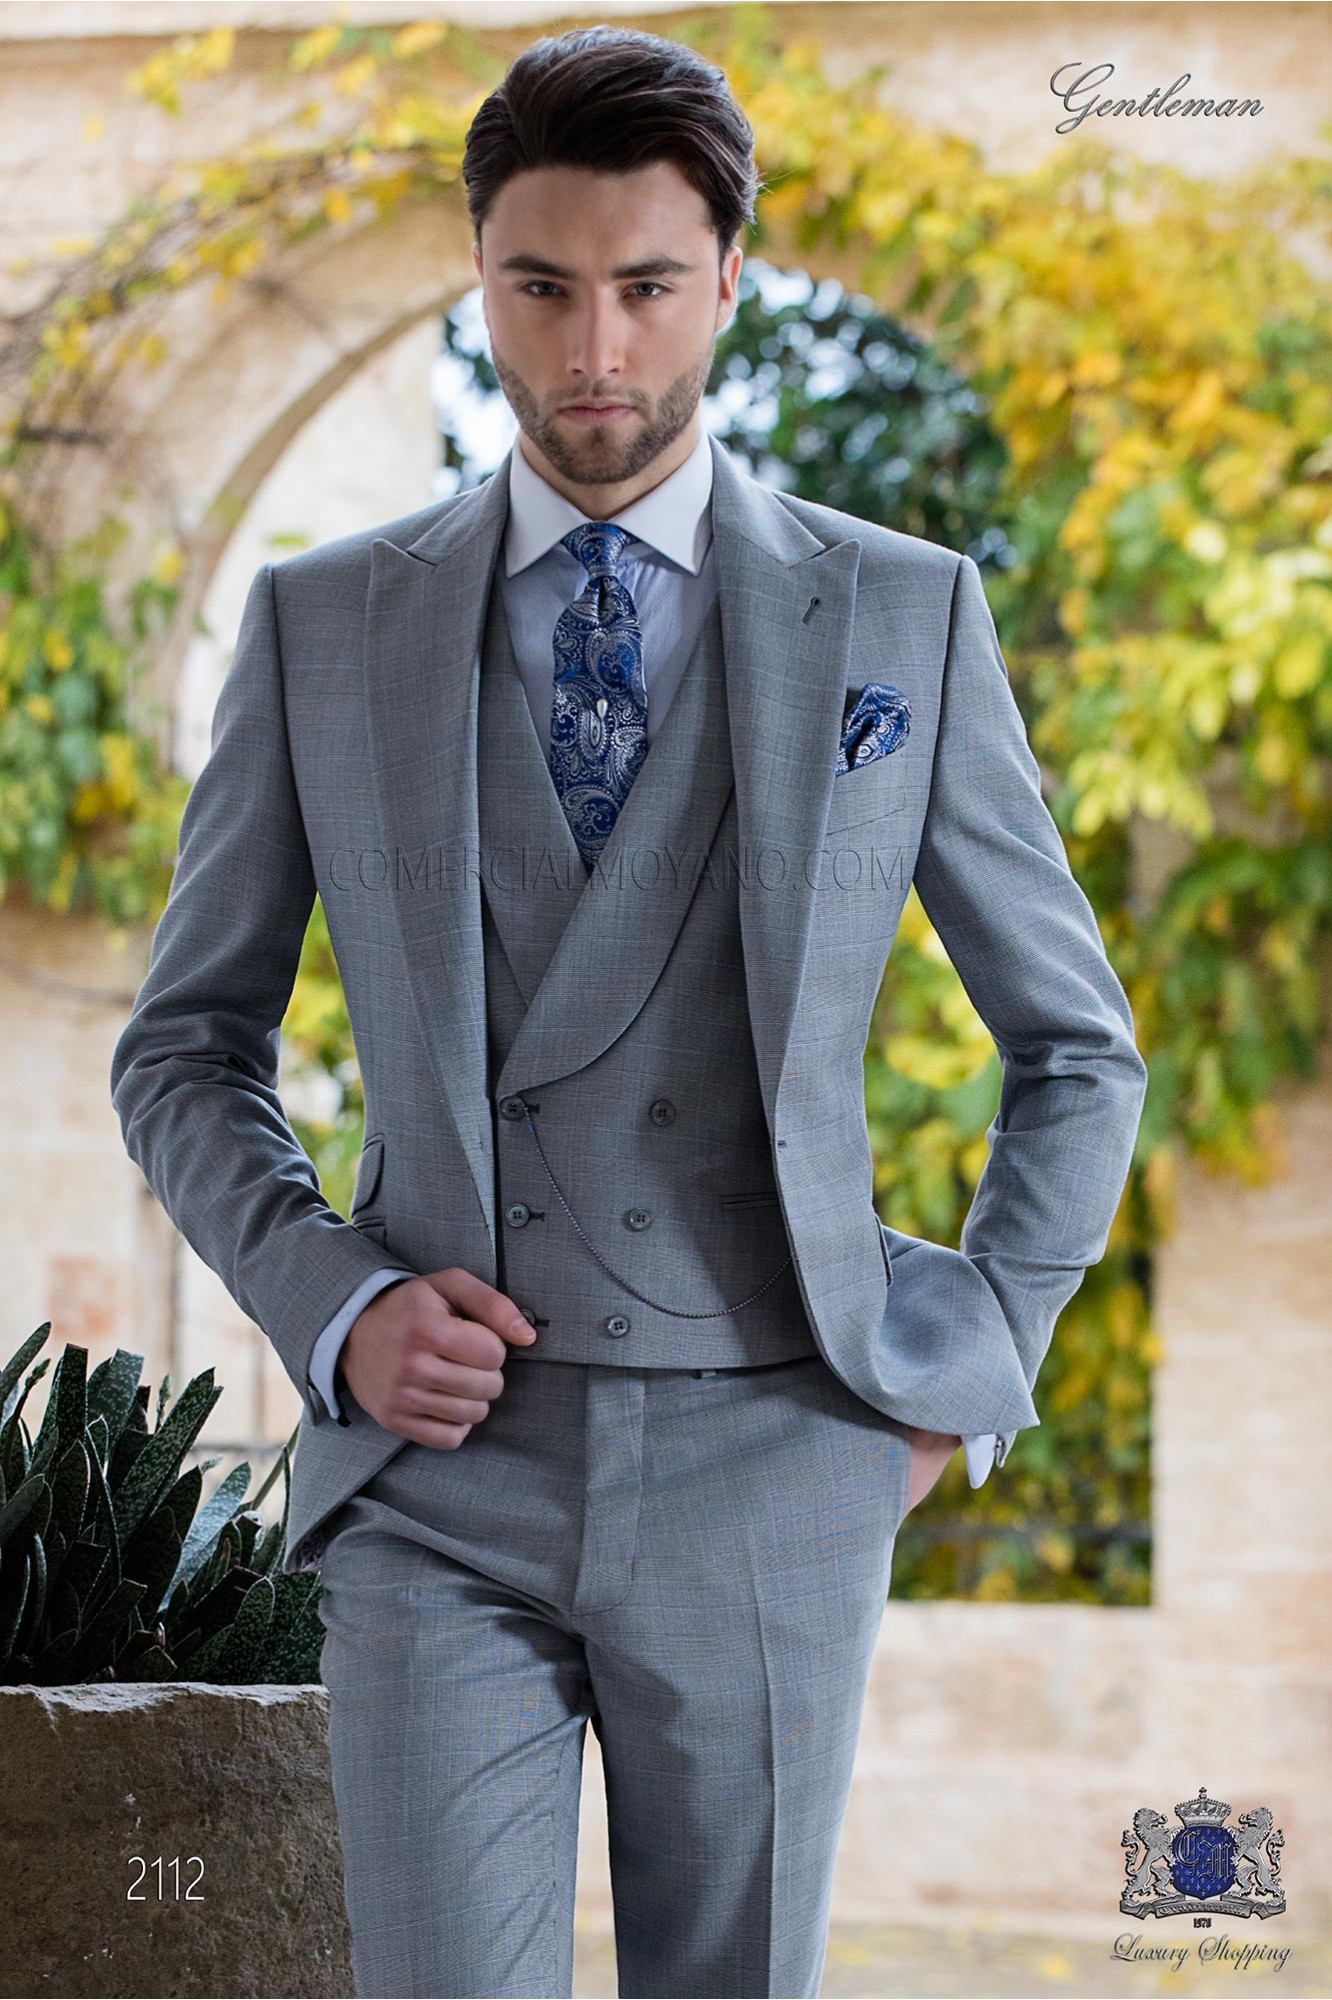 Traje de novio Príncipe de Gales gris claro y celest modelo: 2112 Mario Moyano colección Gentleman